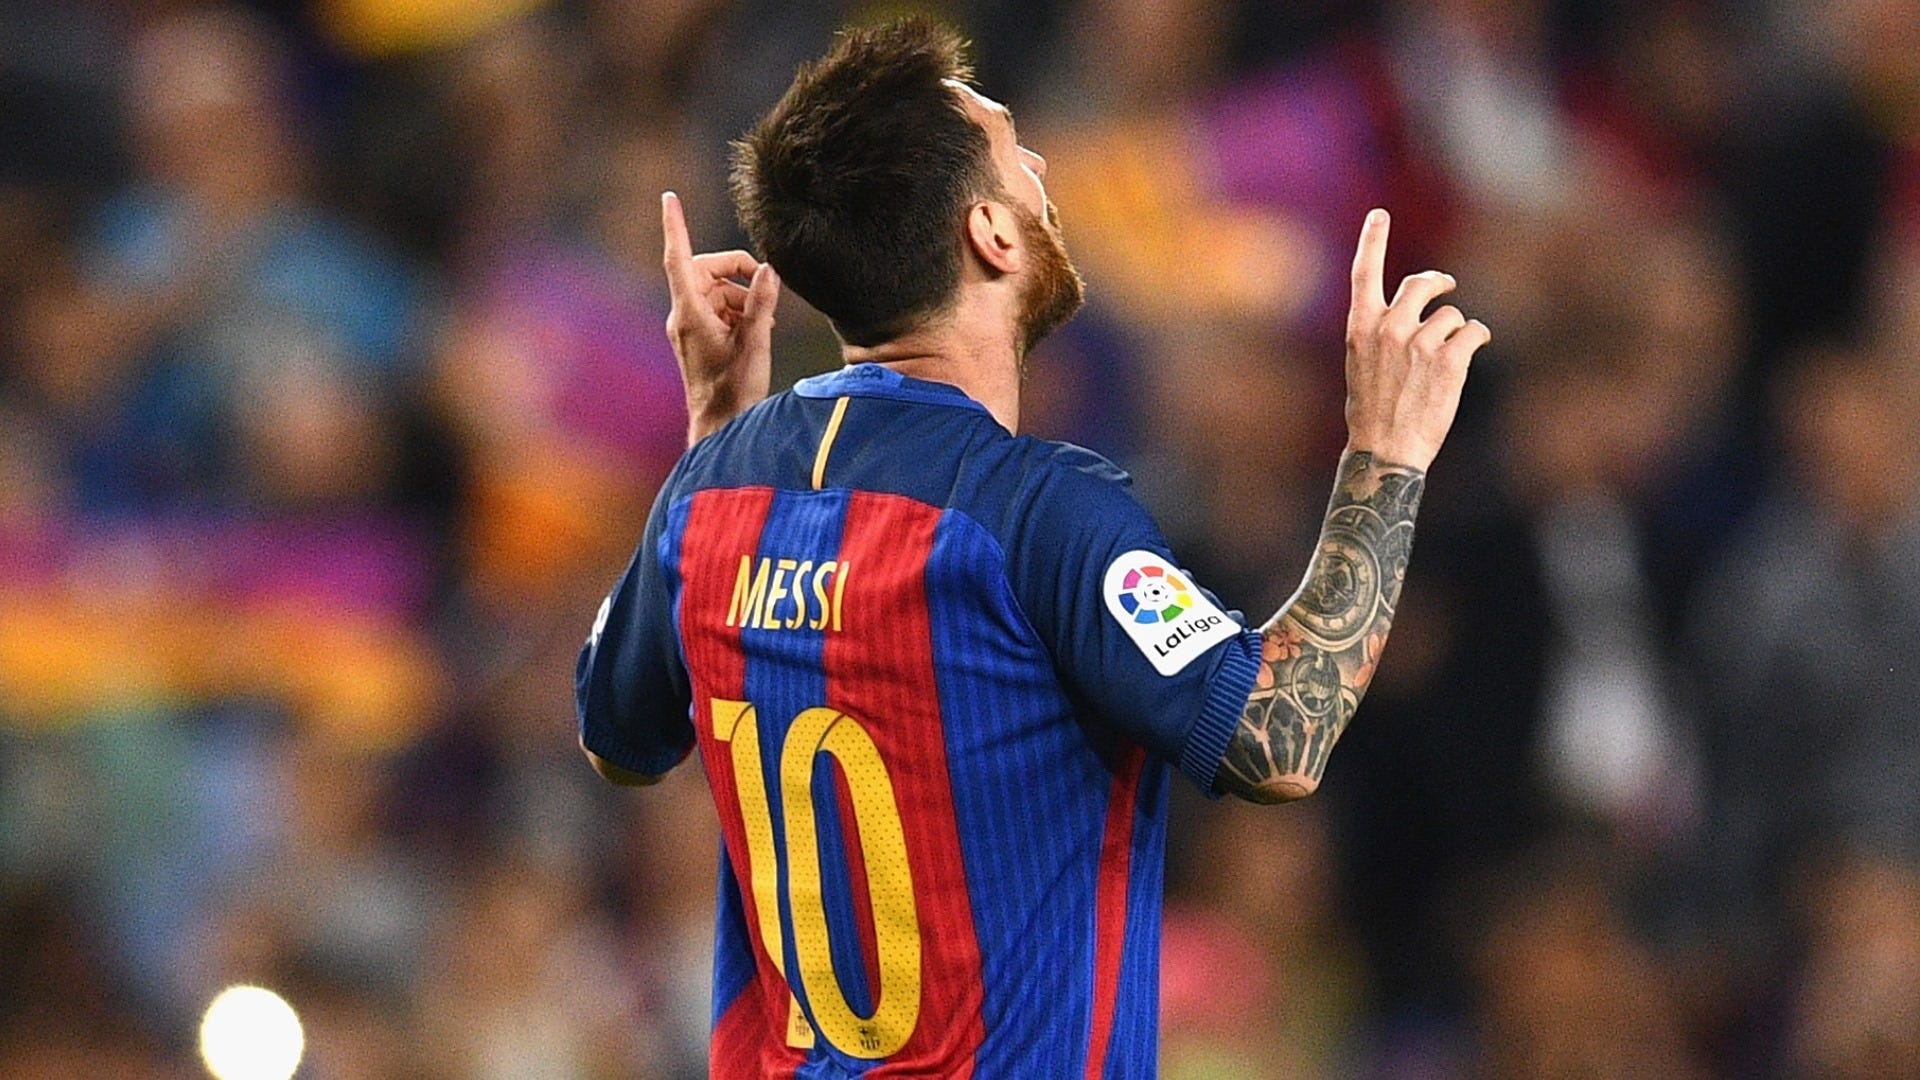 Khám phá vua phá lưới La Liga - Lionel Messi. Cùng với hình ảnh liên quan, bạn sẽ được đắm chìm trong những siêu phẩm của ngôi sao này trong suốt sự nghiệp tại Tây Ban Nha. Hãy click vào ảnh và tìm hiểu thêm ngay hôm nay!